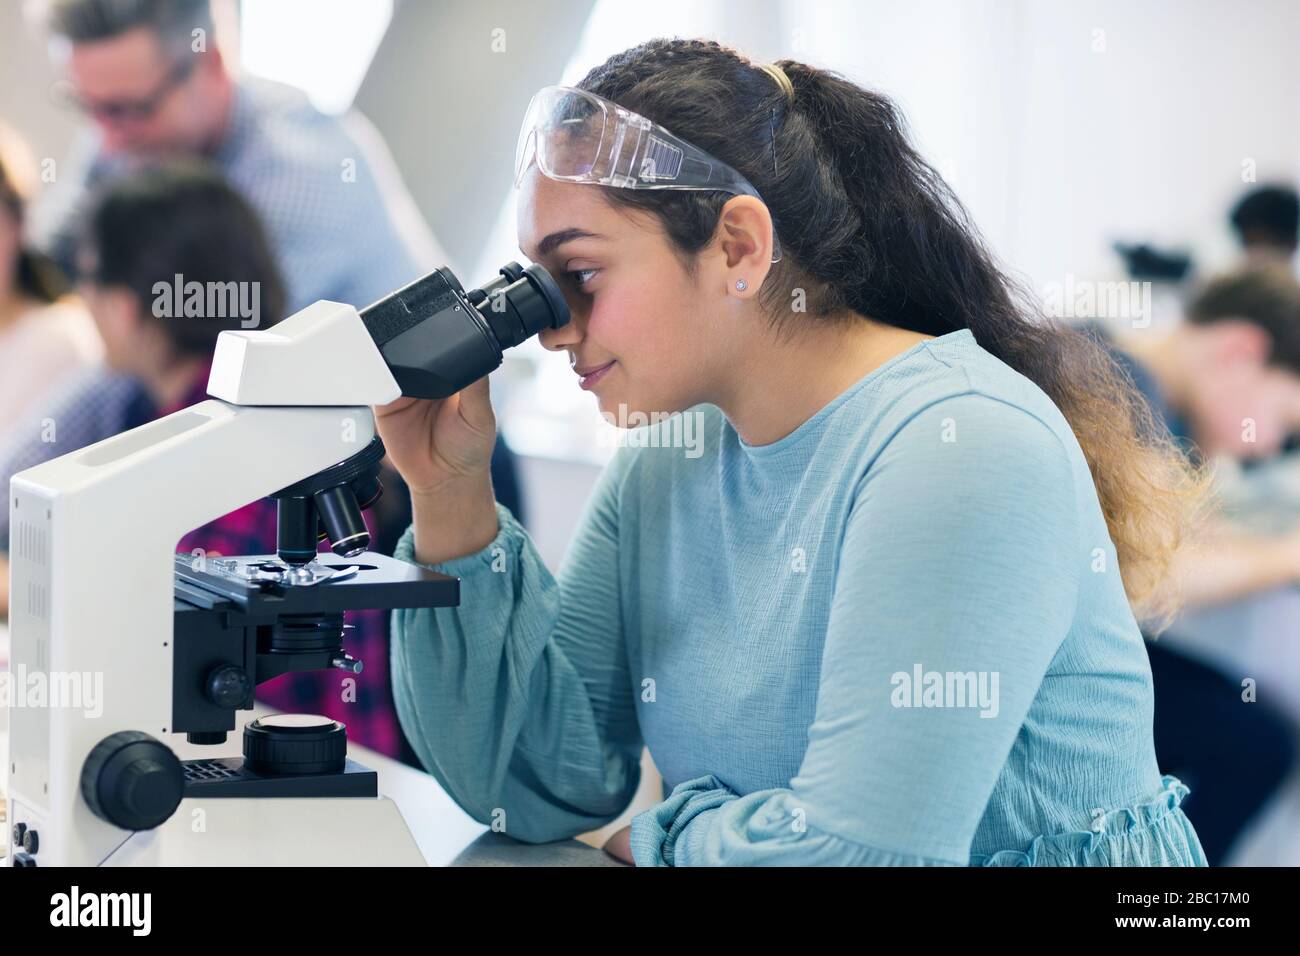 Schüler mit Mikroskop, die wissenschaftliche Experimente im Laborunterricht durchführen Stockfoto